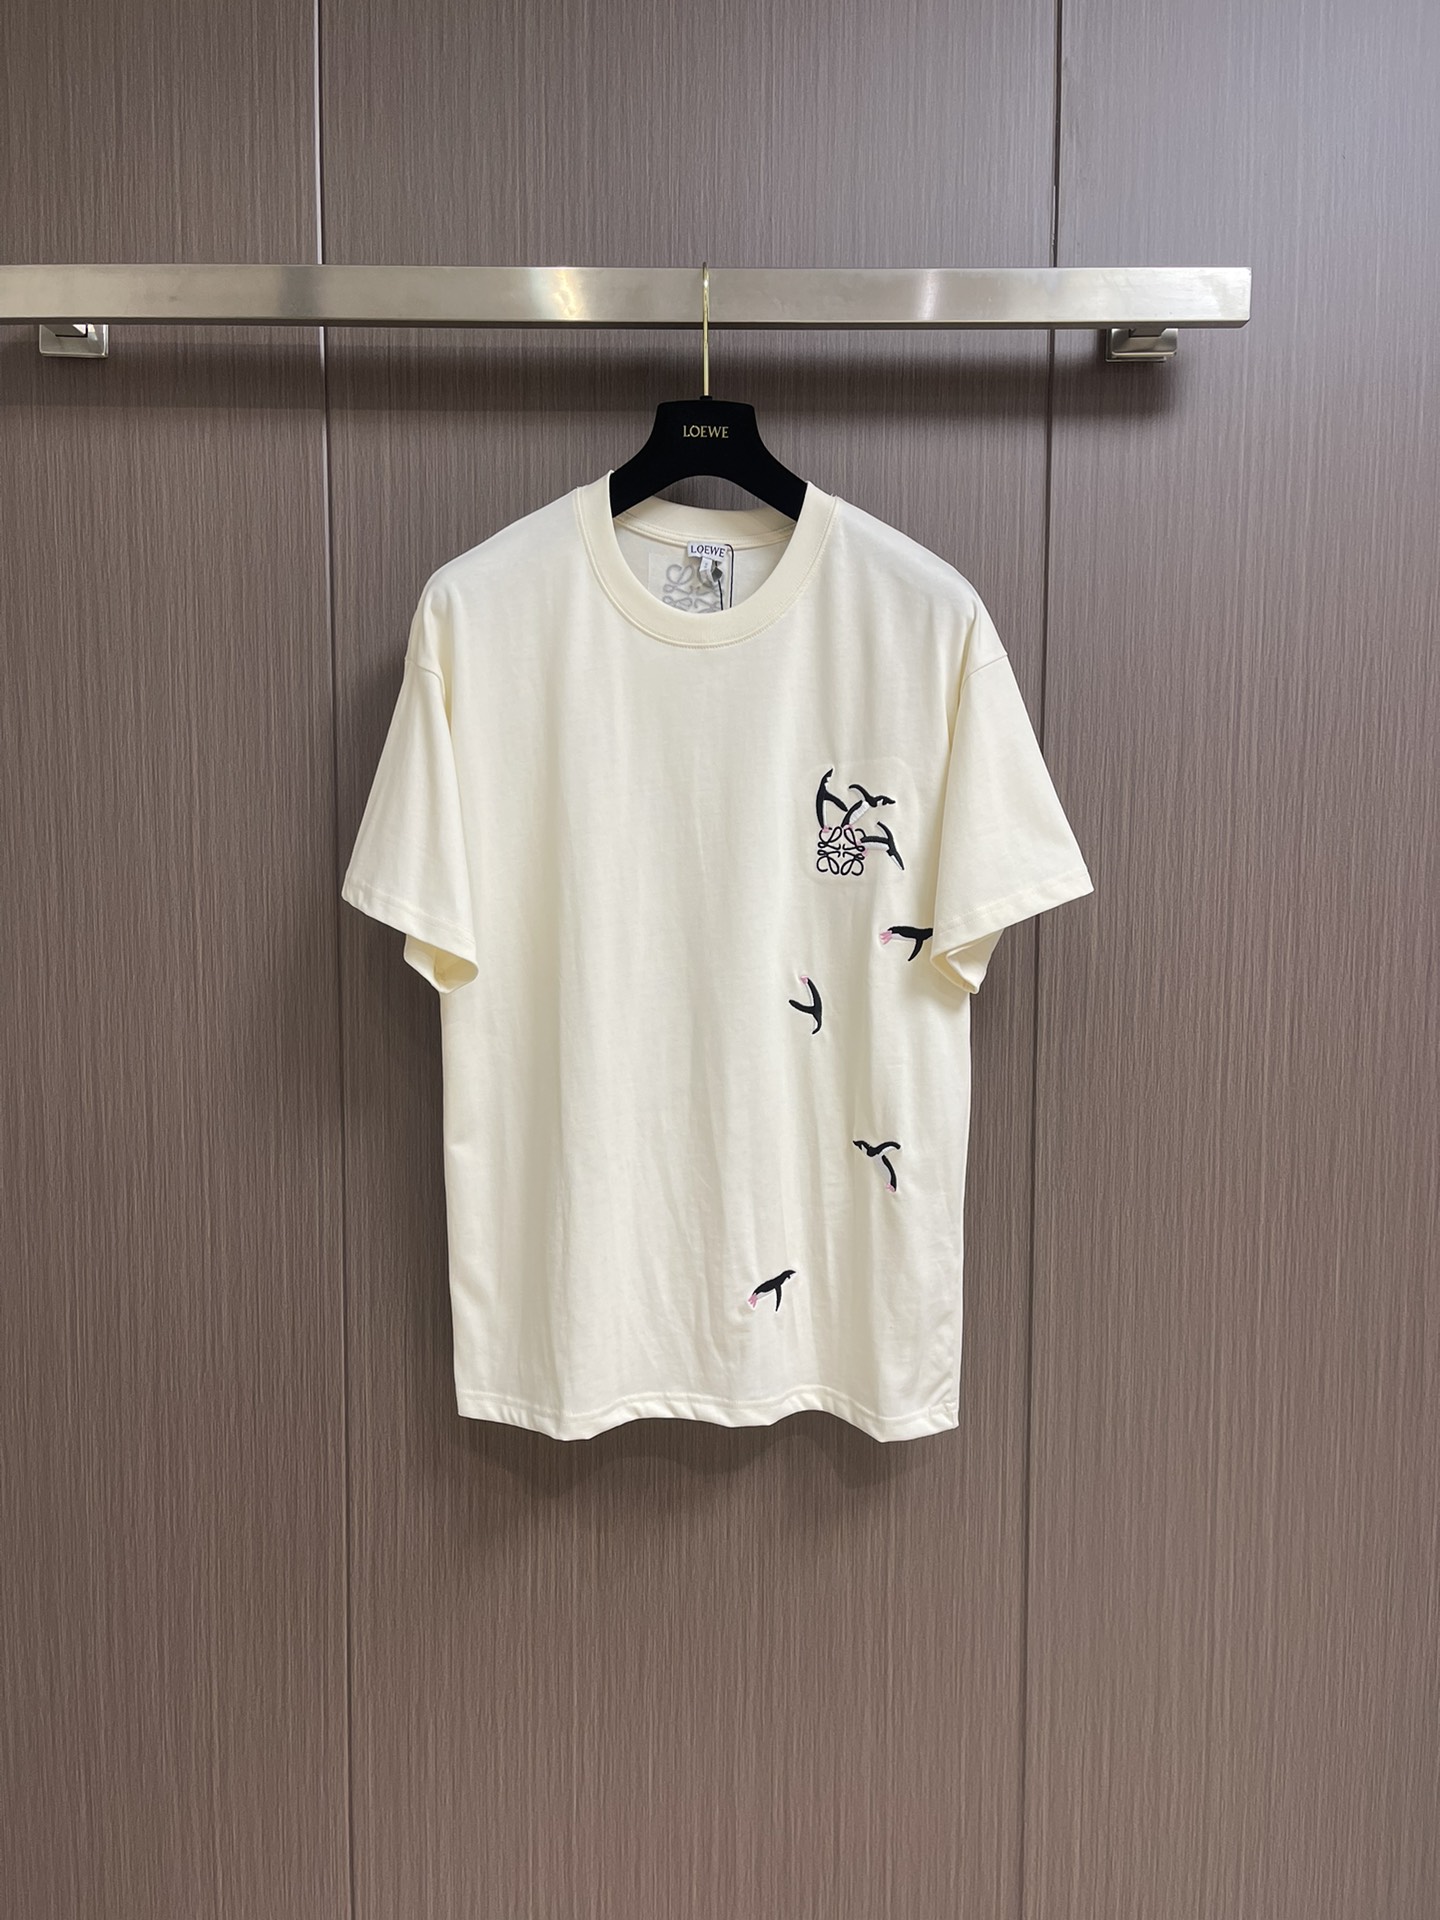 Loewe Clothing T-Shirt Embroidery Unisex Cotton Short Sleeve